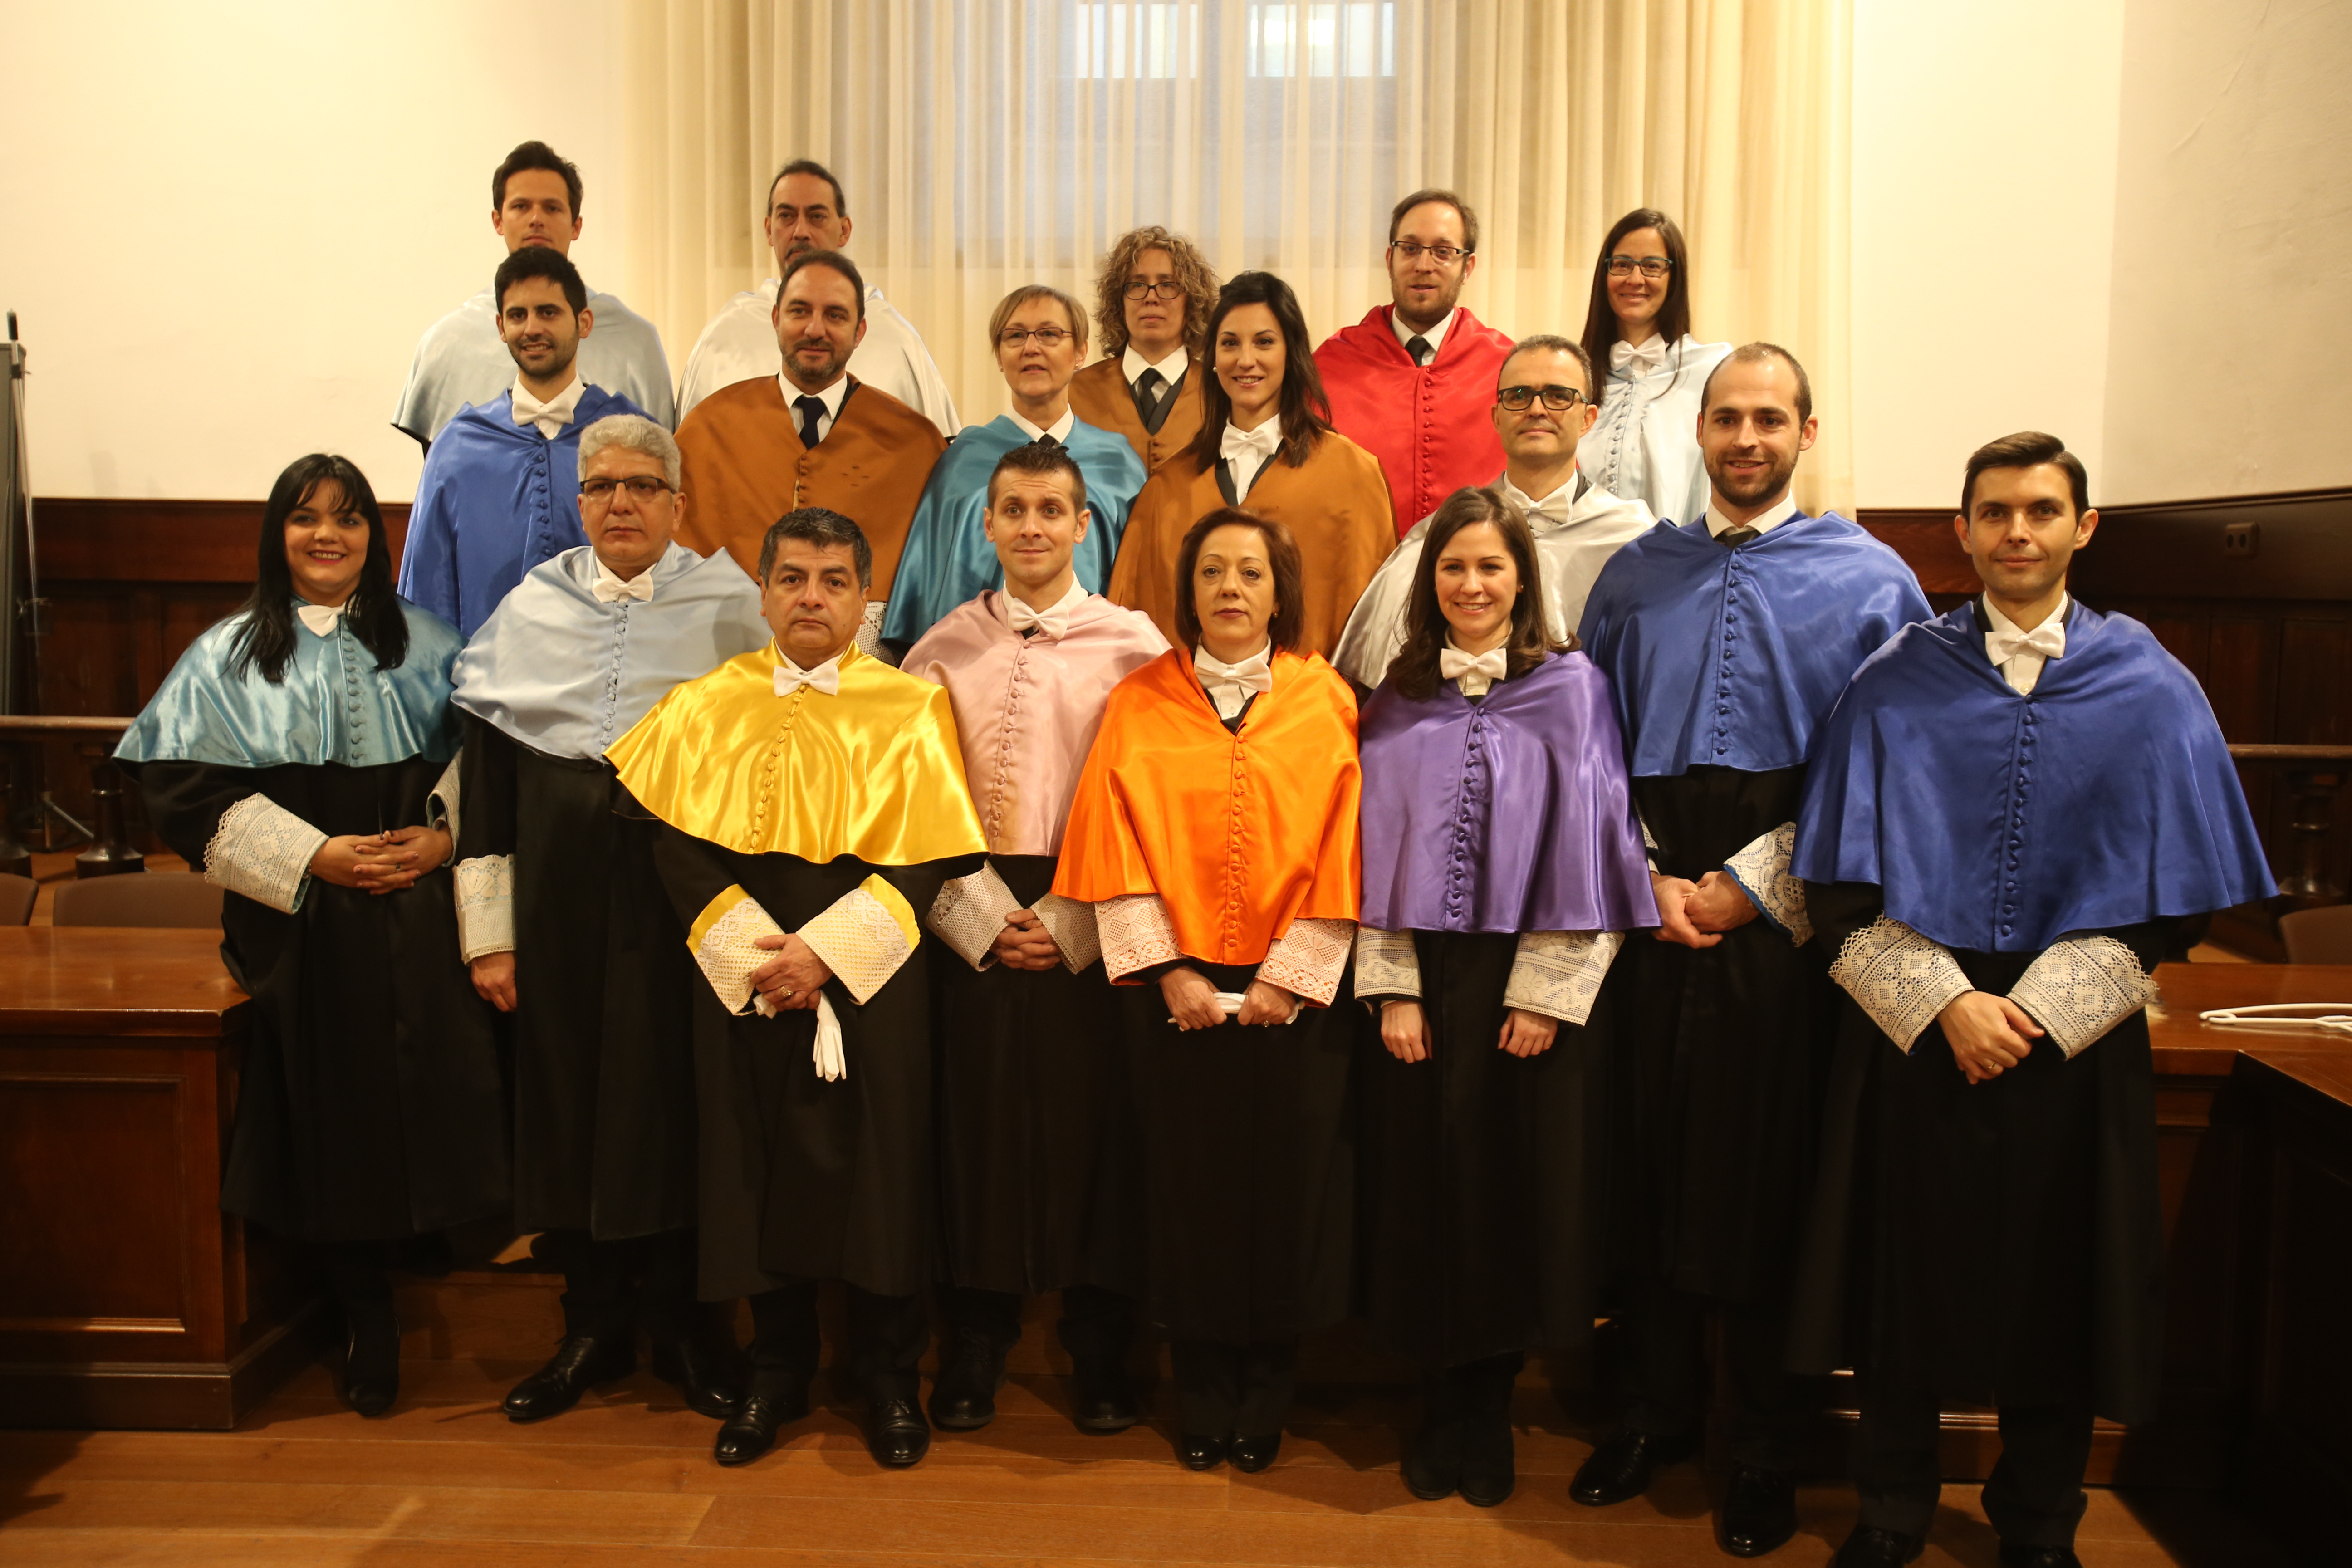 La Universidad de Salamanca celebra la sesión académica de la festividad de Santo Tomás de Aquino con la investidura de 18 nuevos doctores